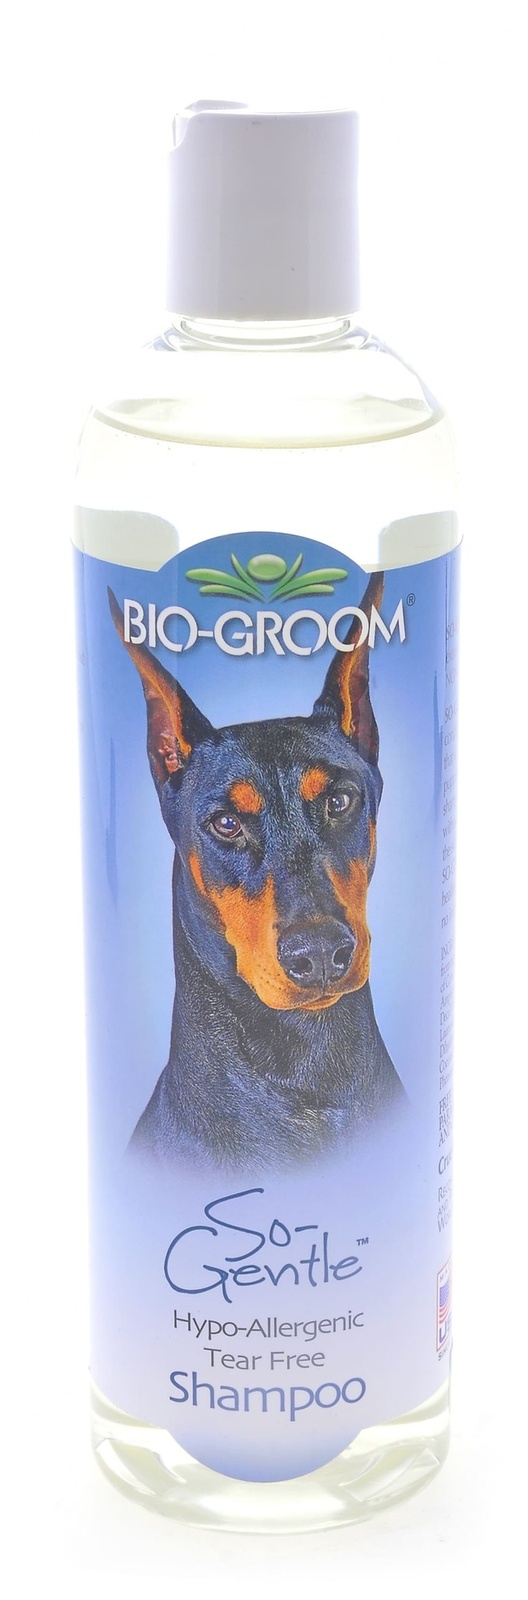 Biogroom Biogroom шампунь гипоаллергенный, концентрат 1:2, 1 литр готового шампуня (355 г) biogroom biogroom кондиционер шелковый концентрат 1 4 silk conditioner 355 г